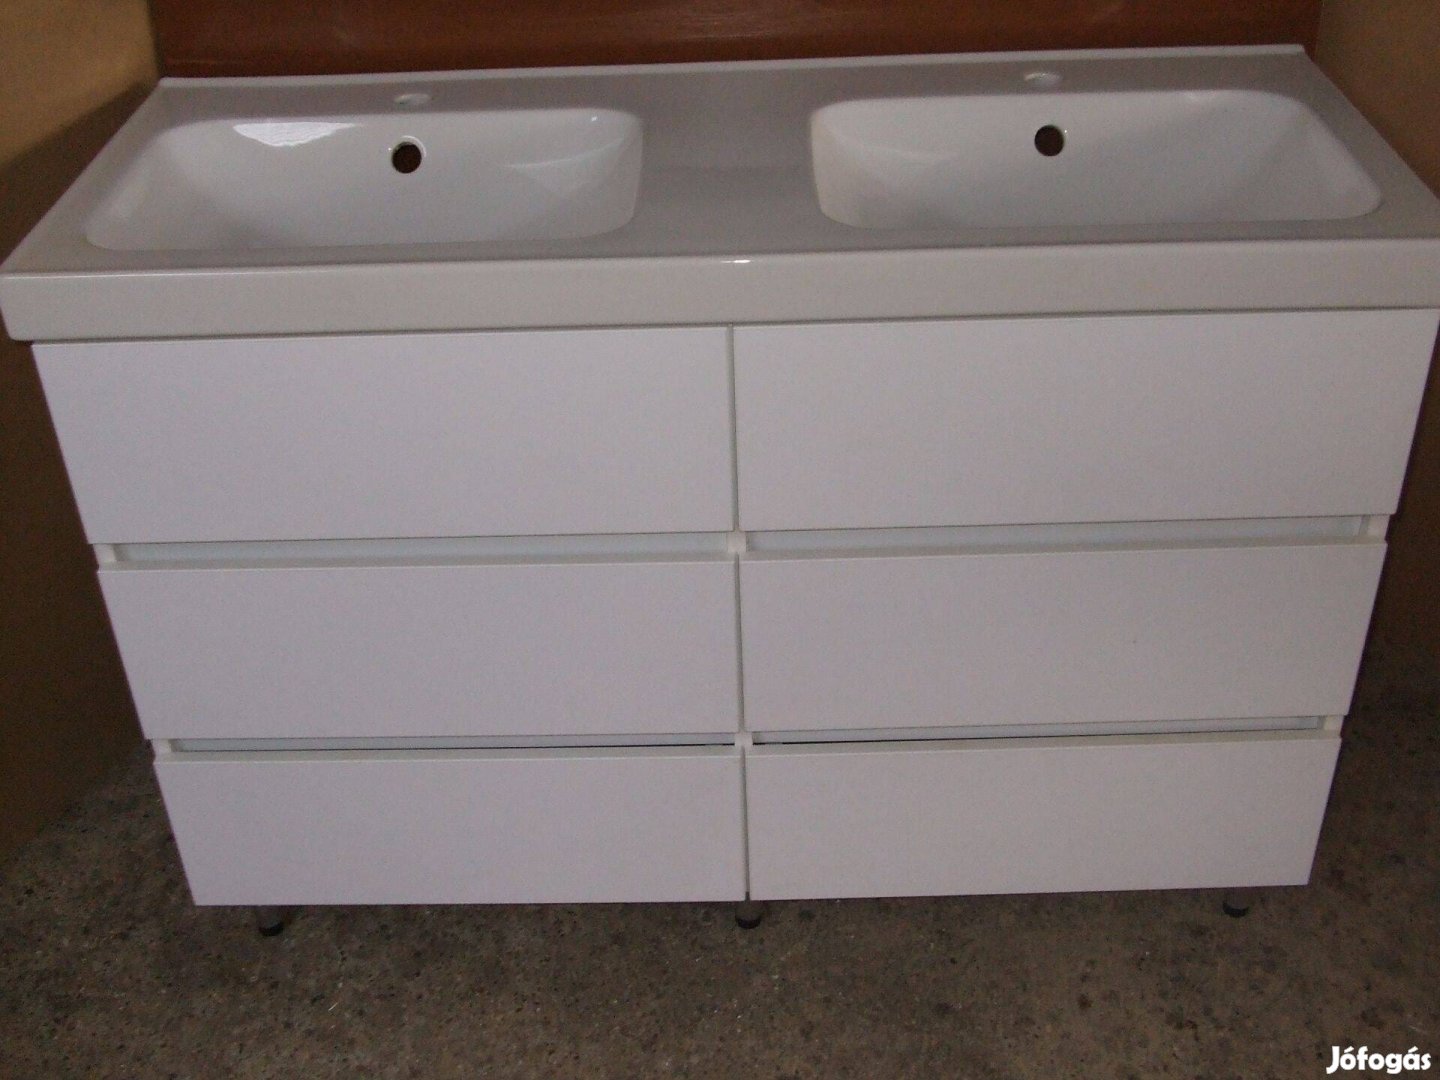 Új dupla mosdószekrény magasfényű fehér 6 fiókos bútor 120 cm széles